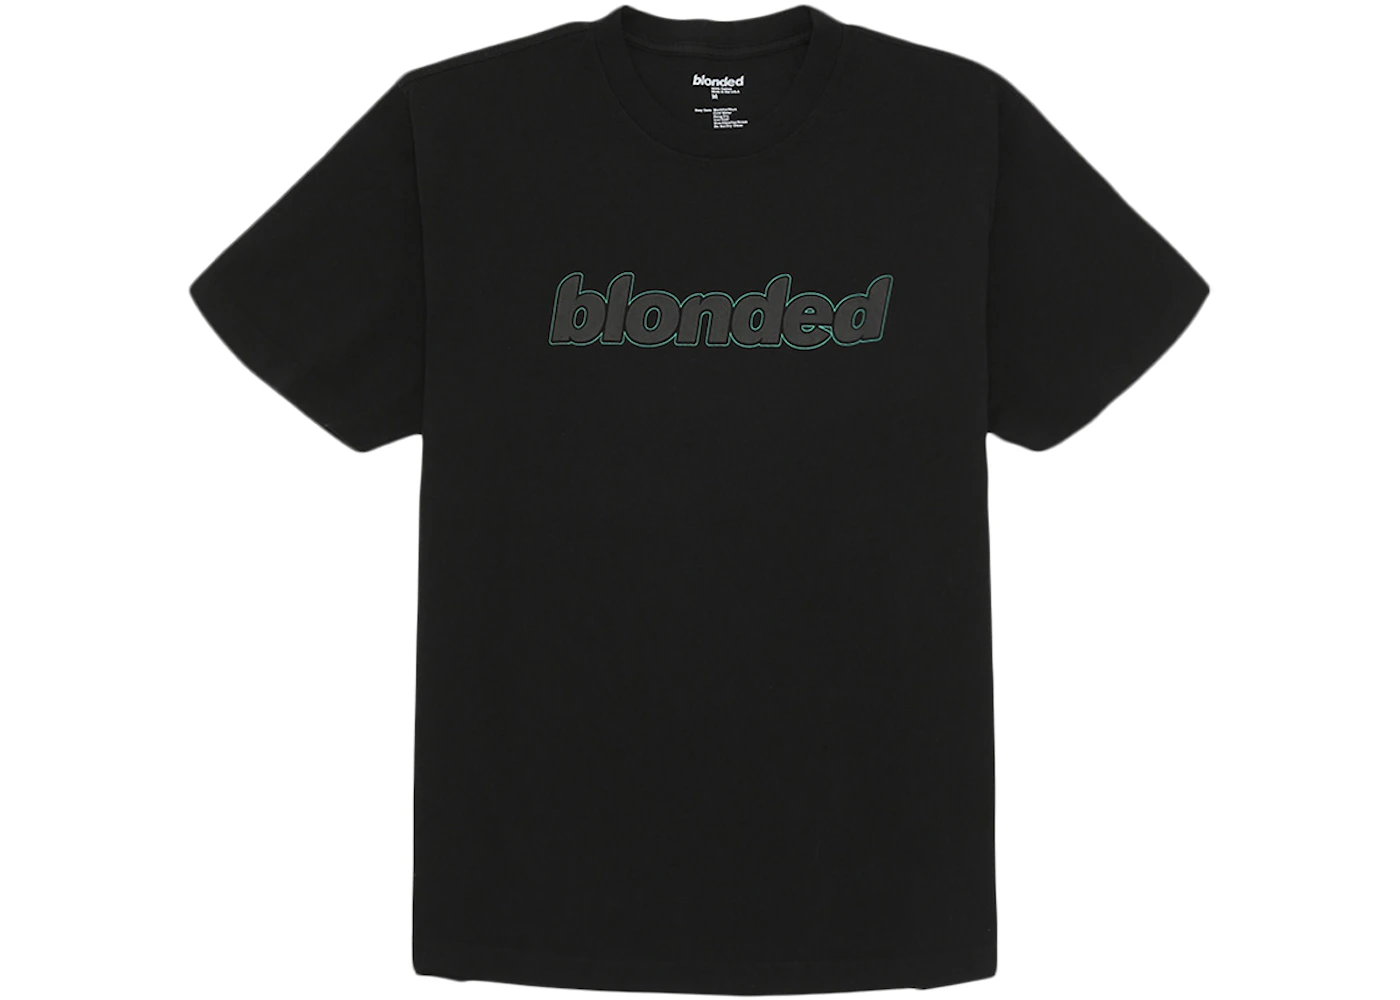 Frank Ocean Blonded Logo T-Shirt Black Men's - FW19 - US